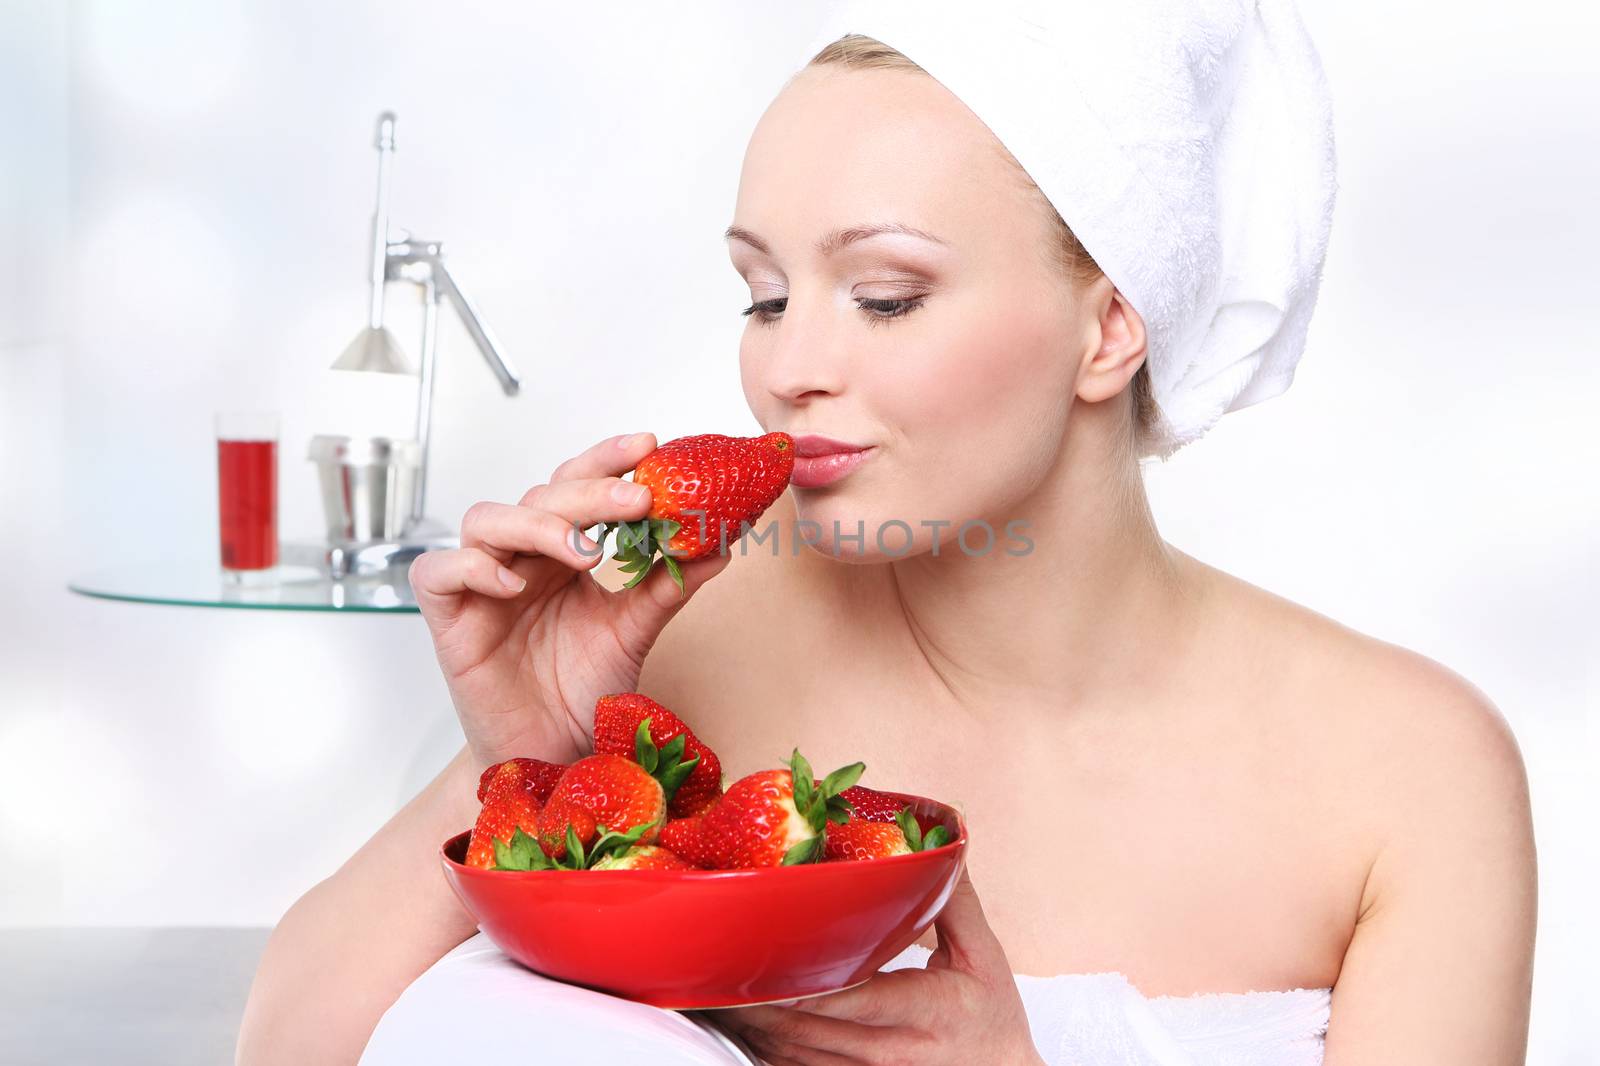 Diet strawberry by robert_przybysz